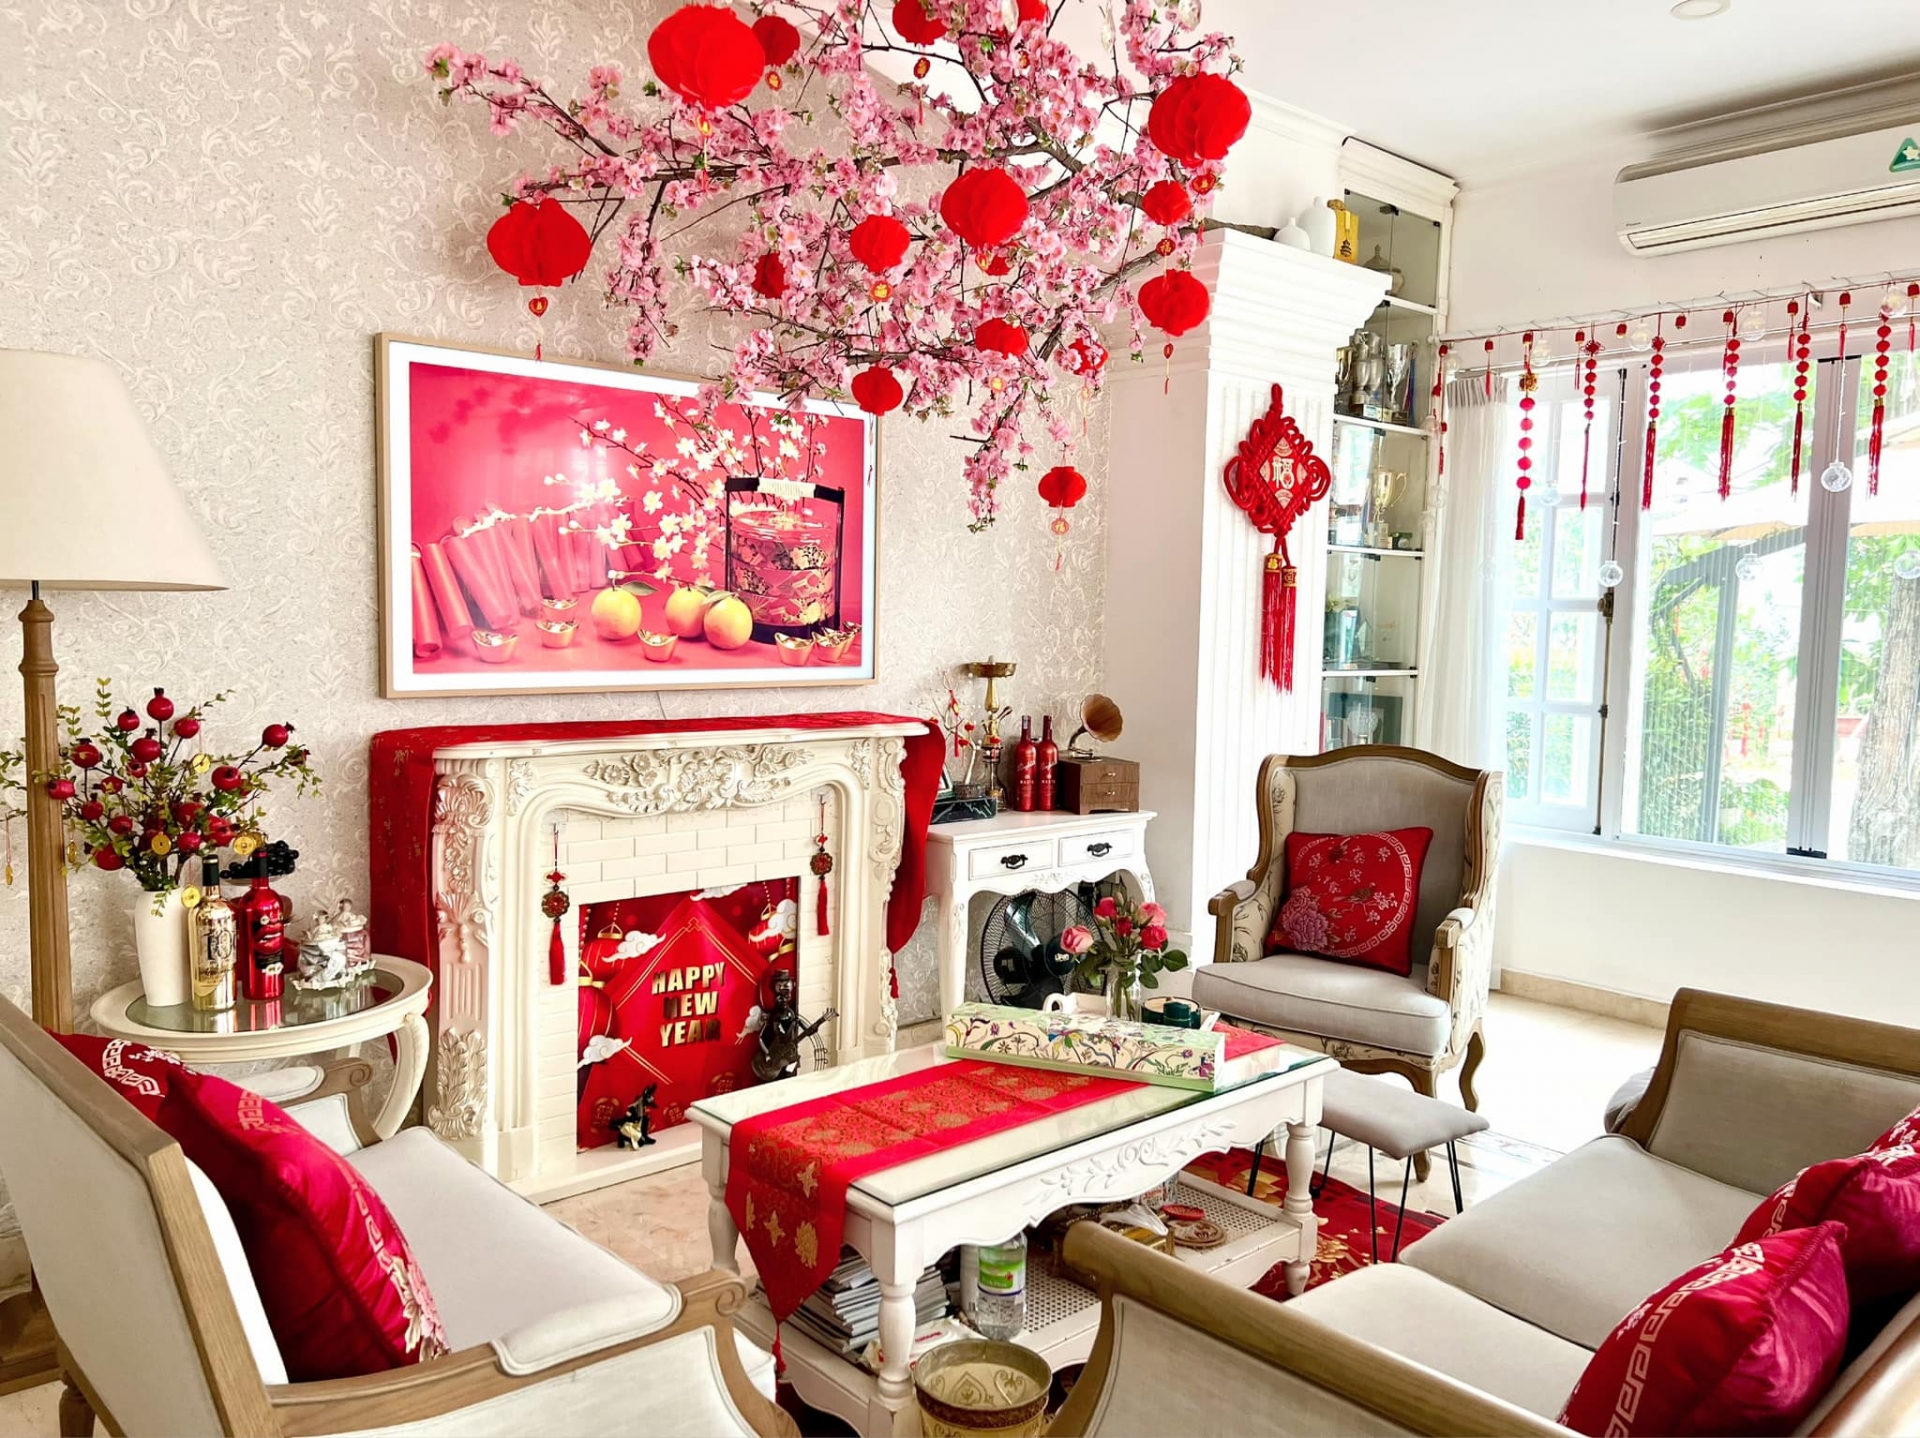 Phòng khách của căn nhà có nội nhất hiện đại theo tông trắng kem, Thúy Hạnh tô điểm với sắc đỏ rực rỡ.